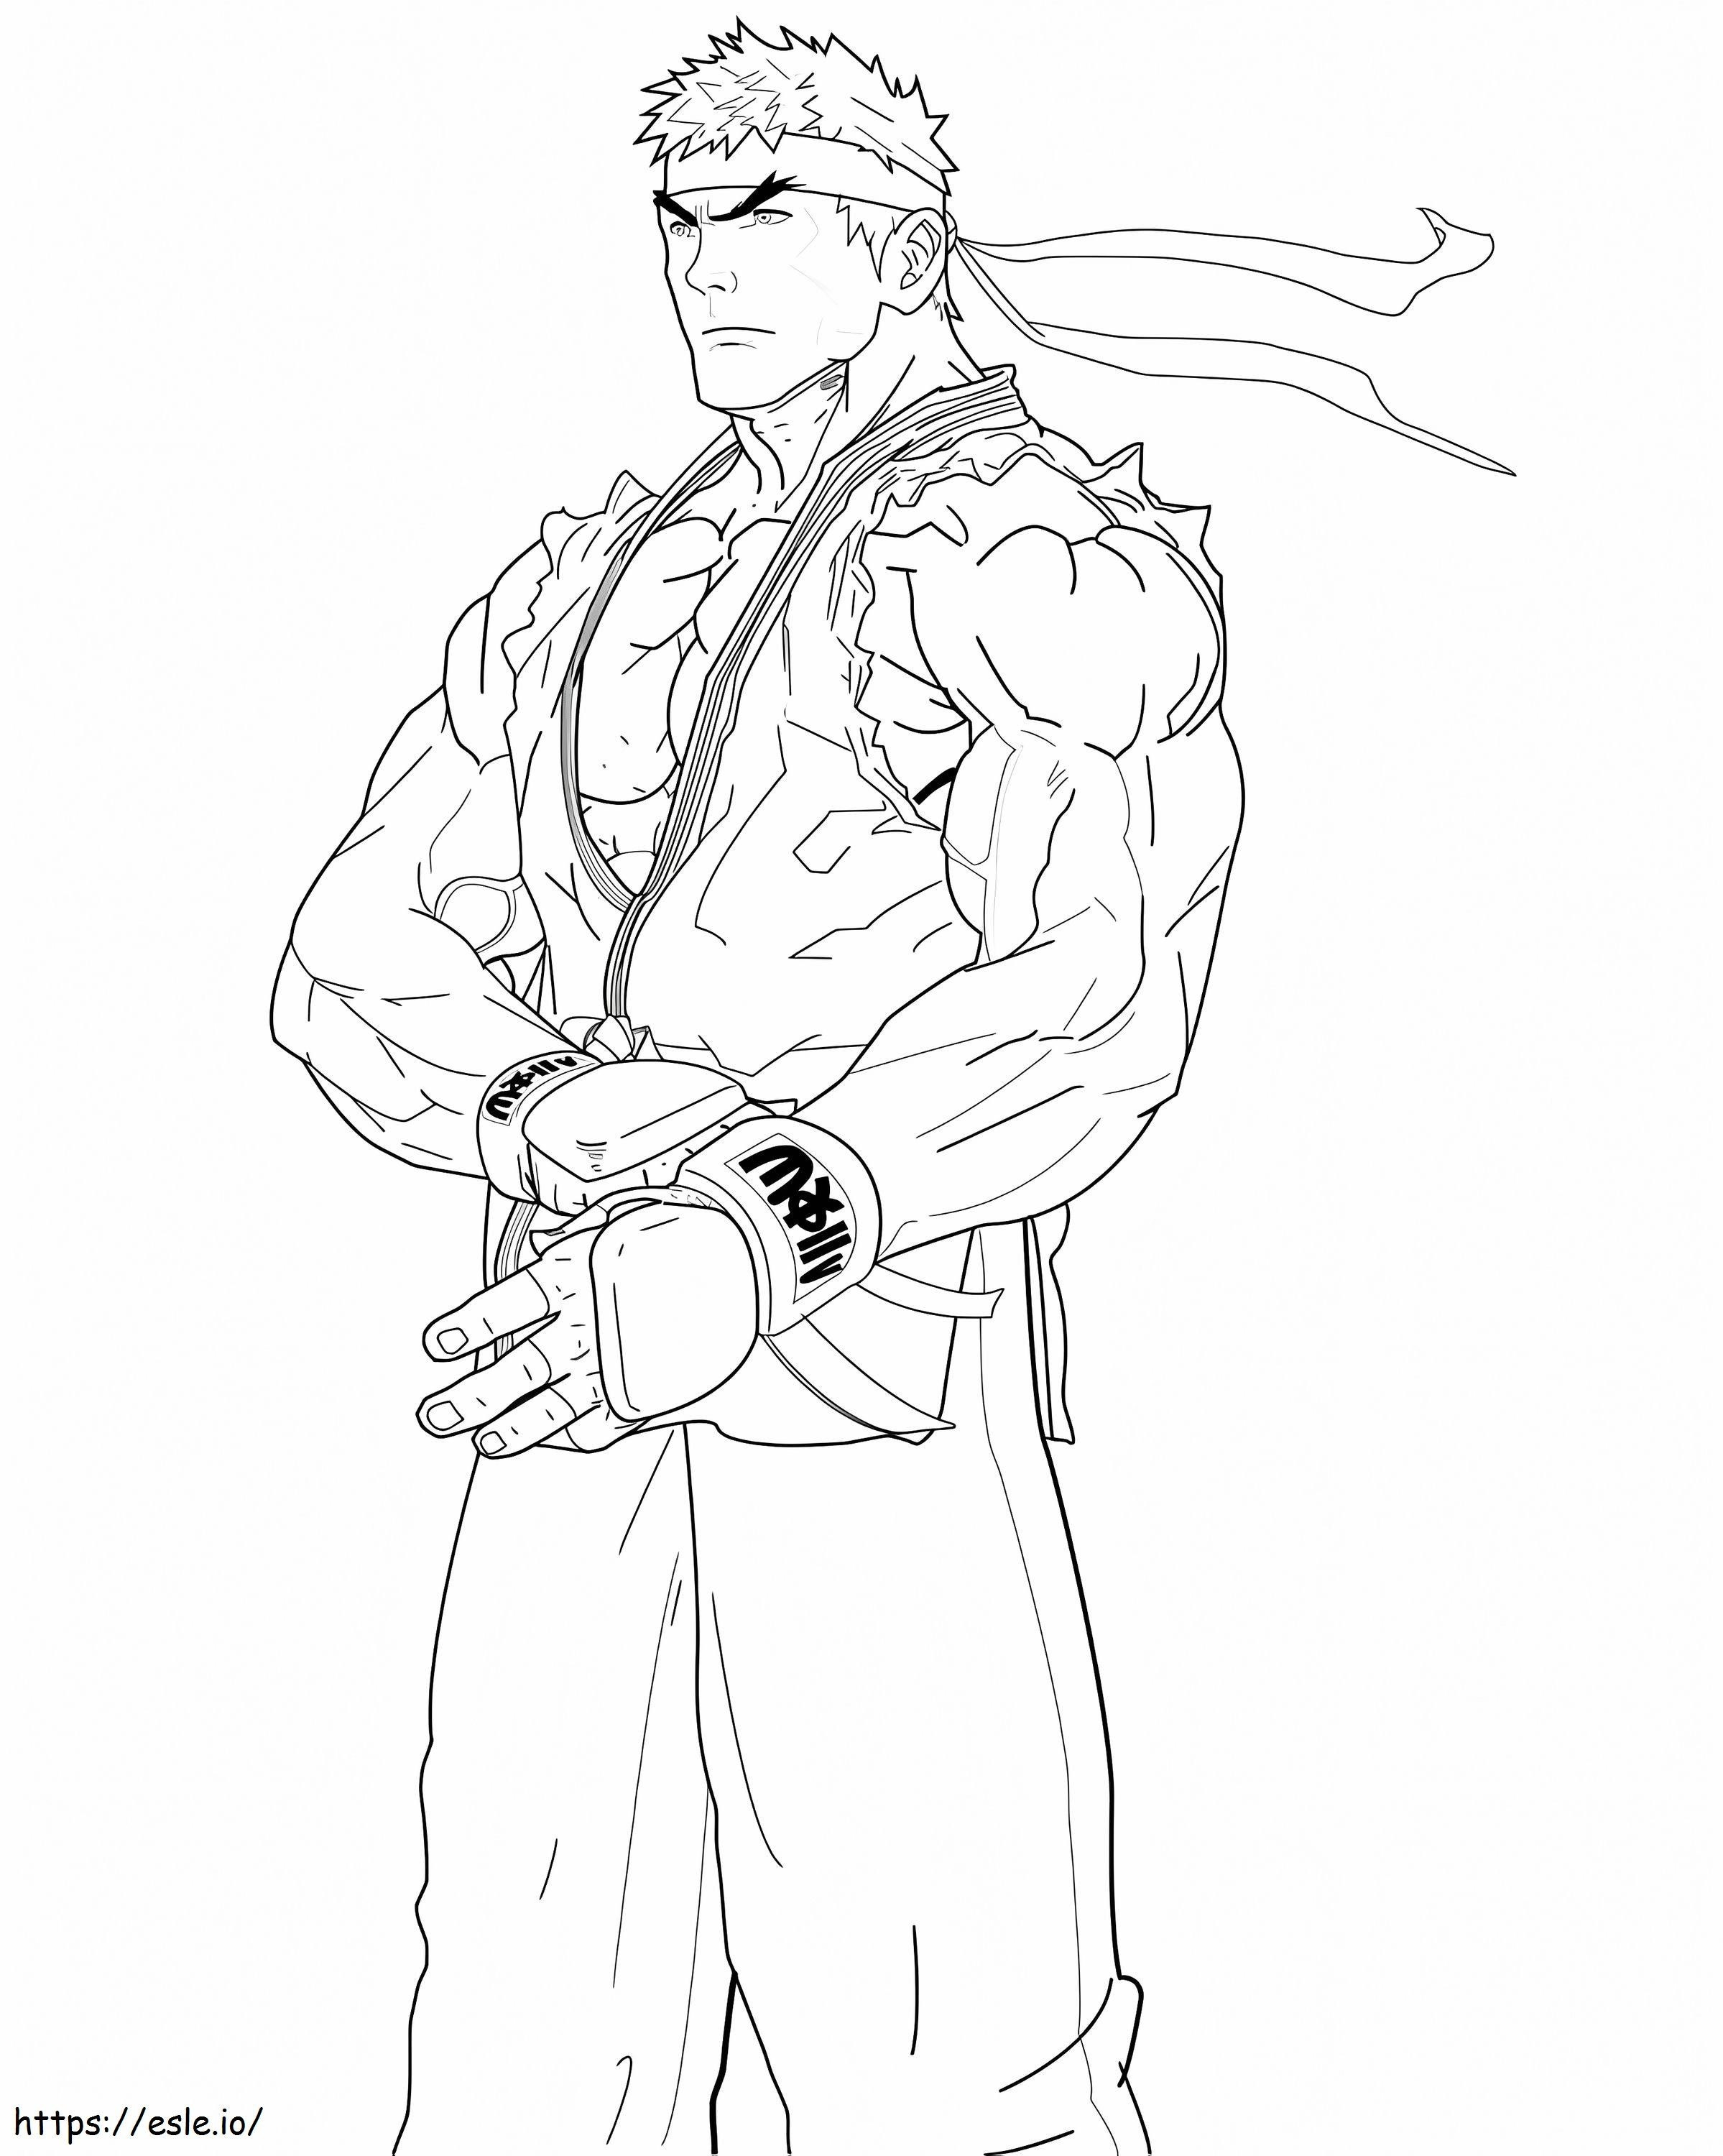 Fantastico Ryu Street Fighter da colorare